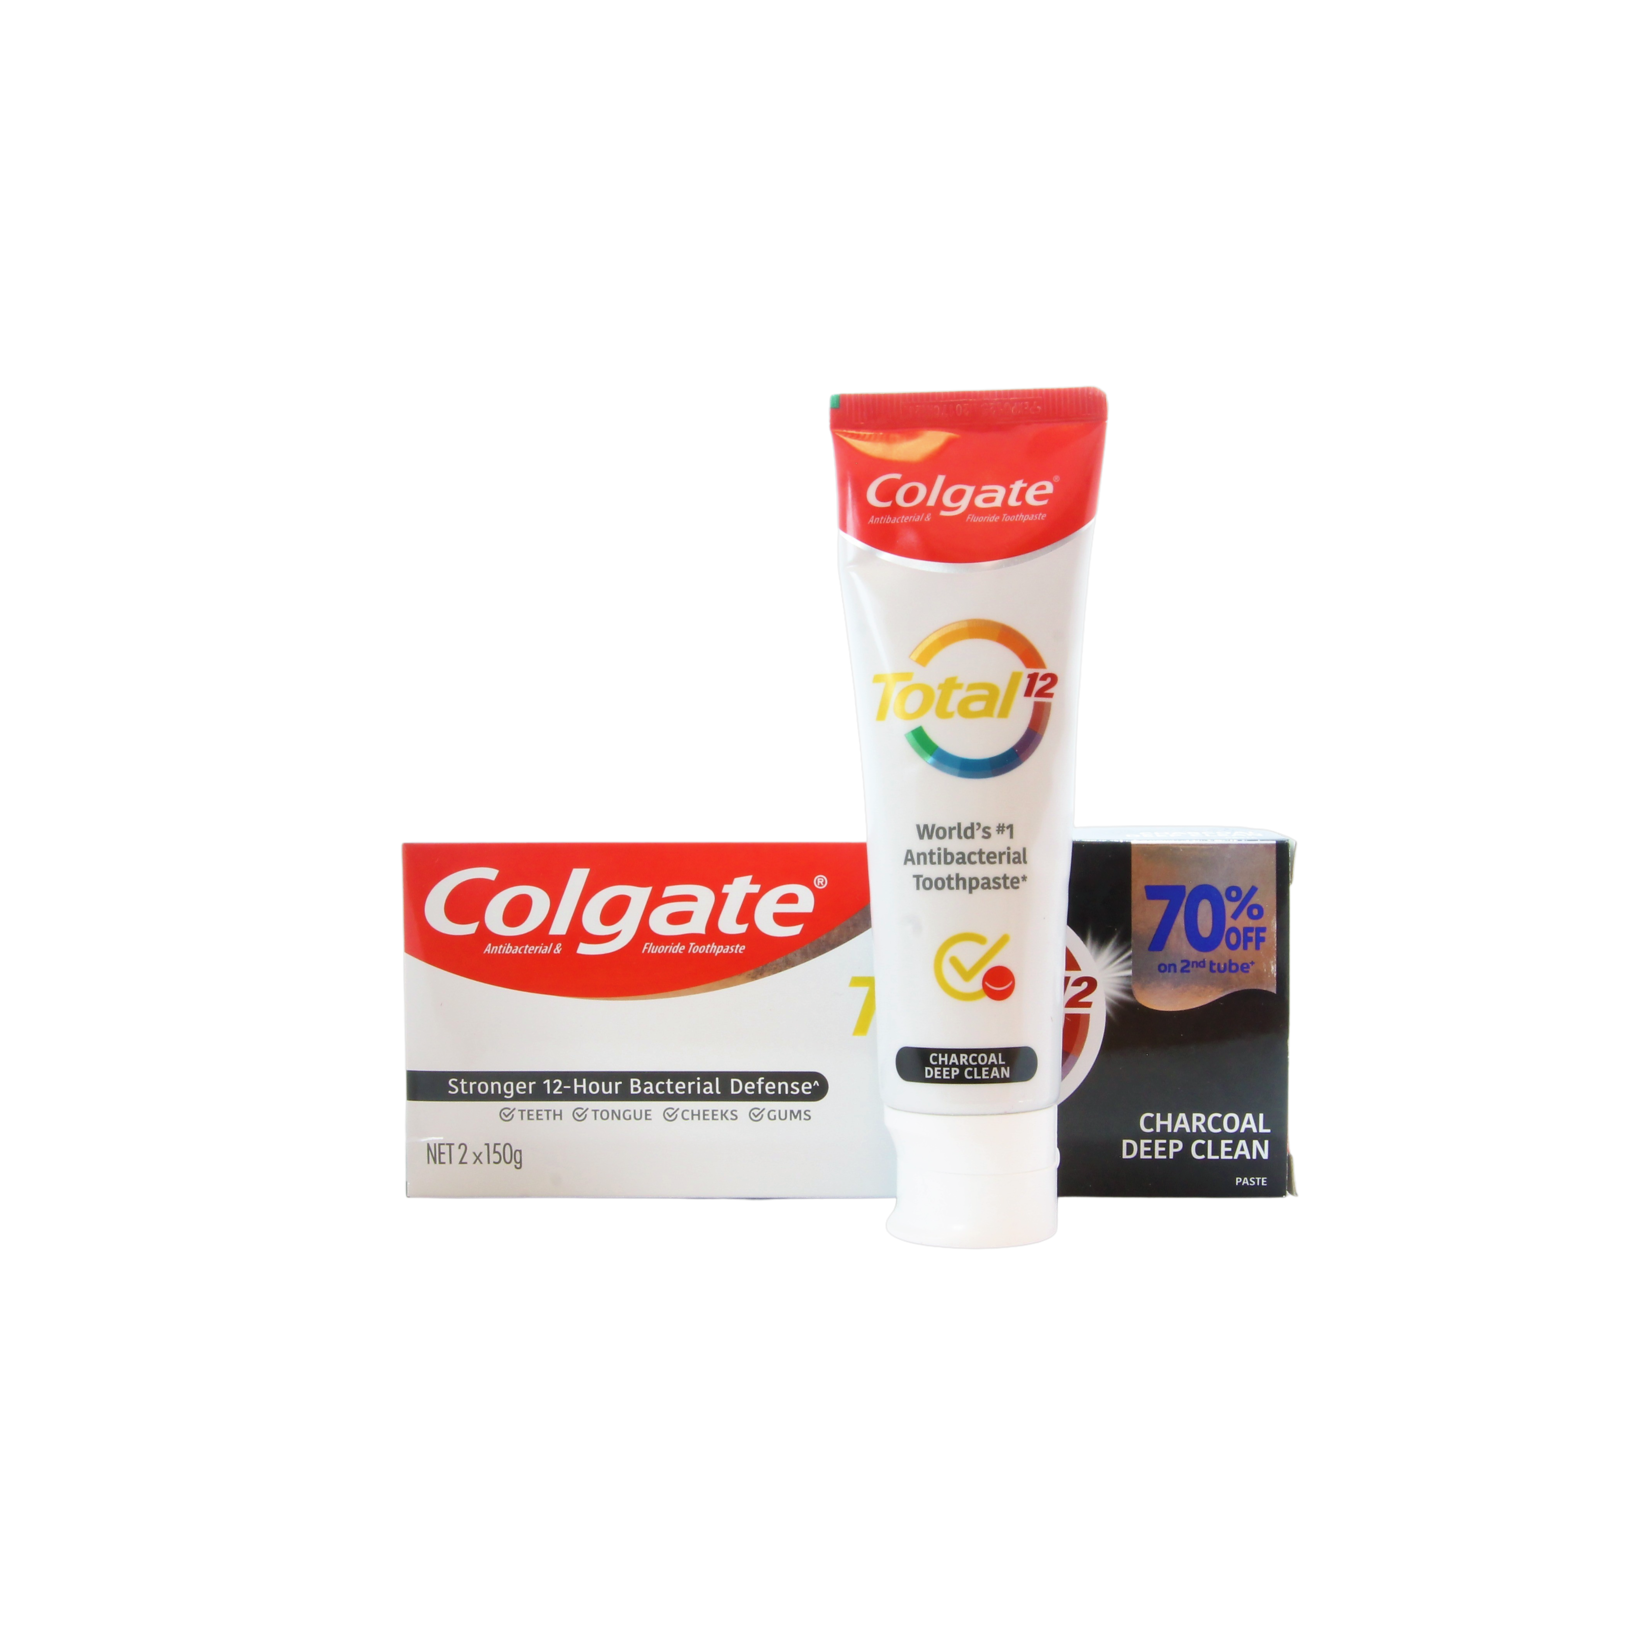 Colgate, een gezonde glimlach in heel Nederland! Colgate Charcoal Deep Clean Toothpaste, 2 x 150 grams